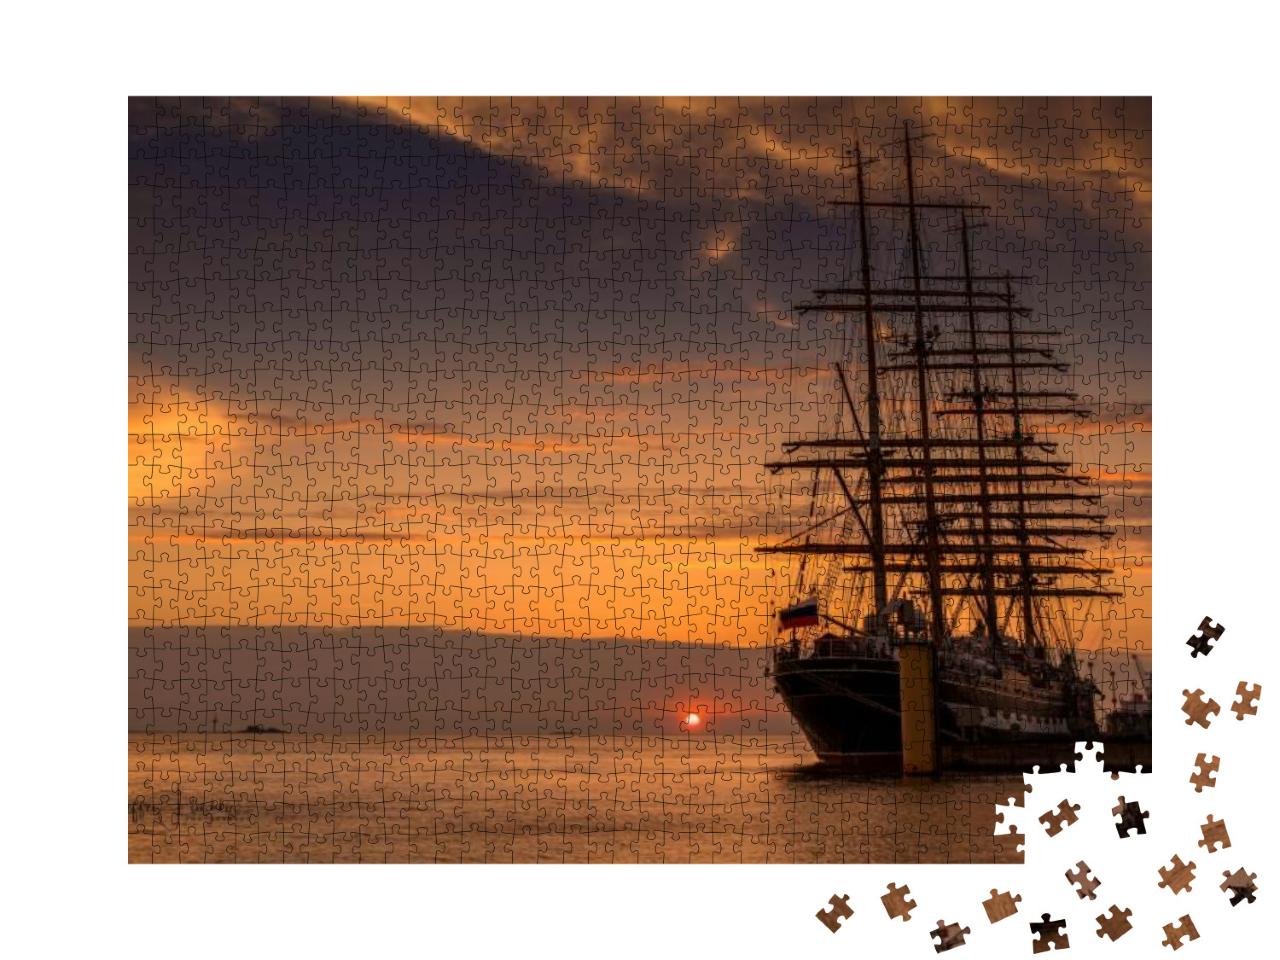 Puzzle 1000 Teile „Segelschiff zurück im Hafen: Sonnenuntergang an der Nordsee“